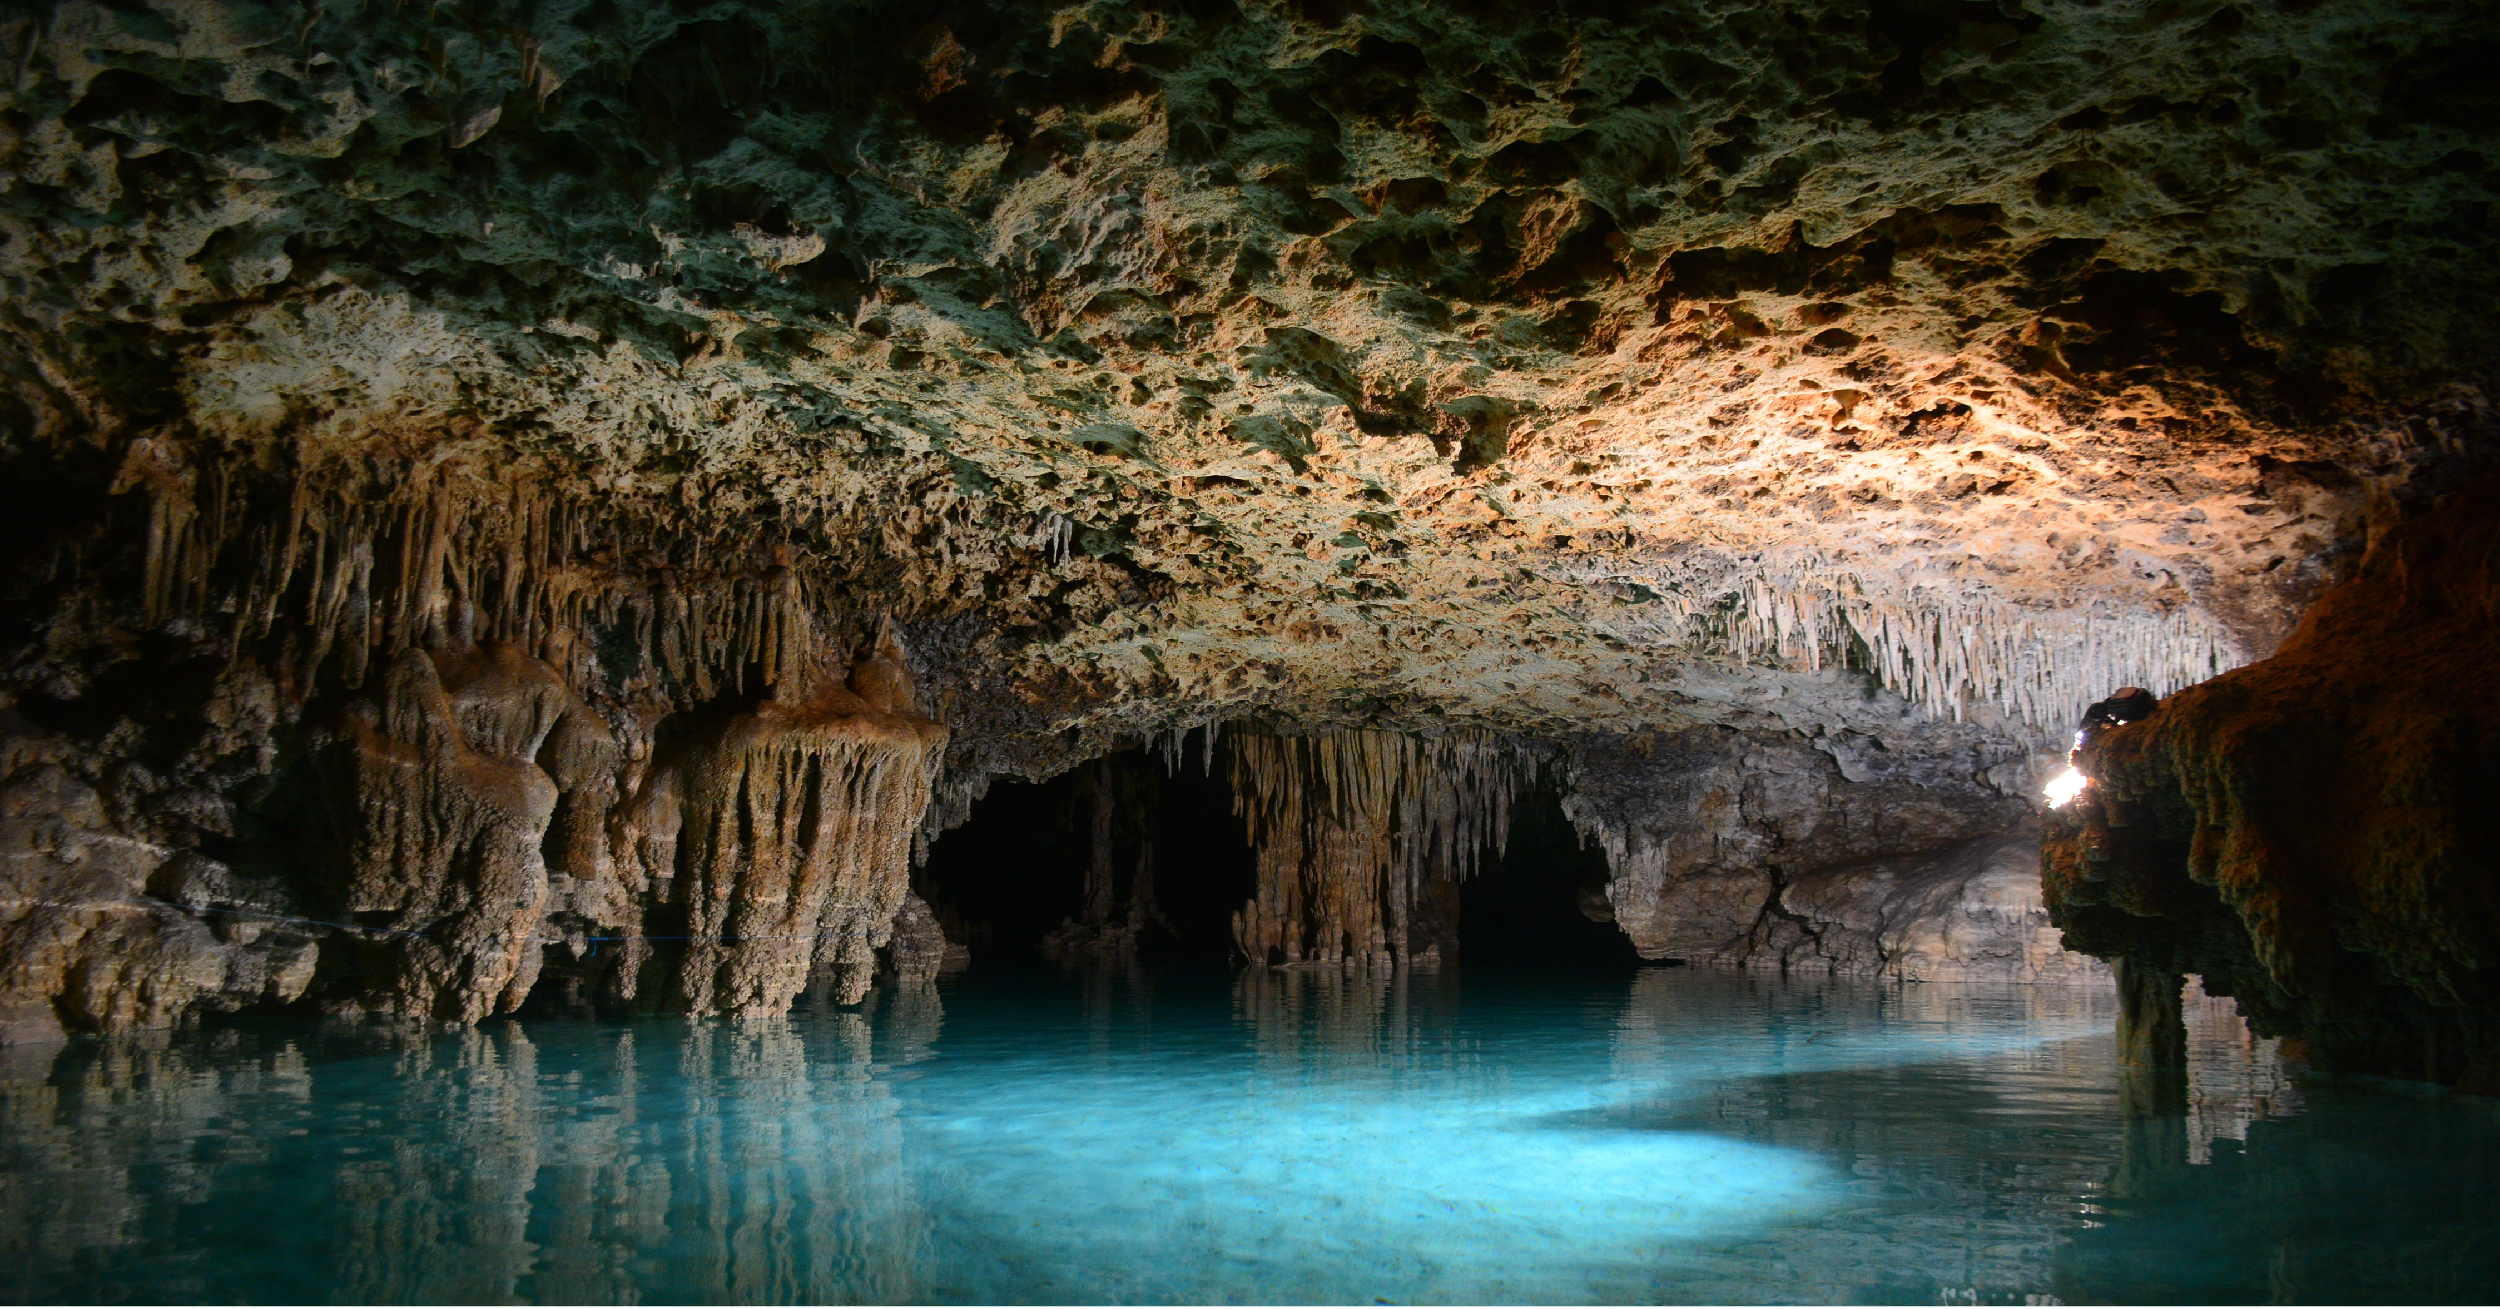 Rio Secreto cave